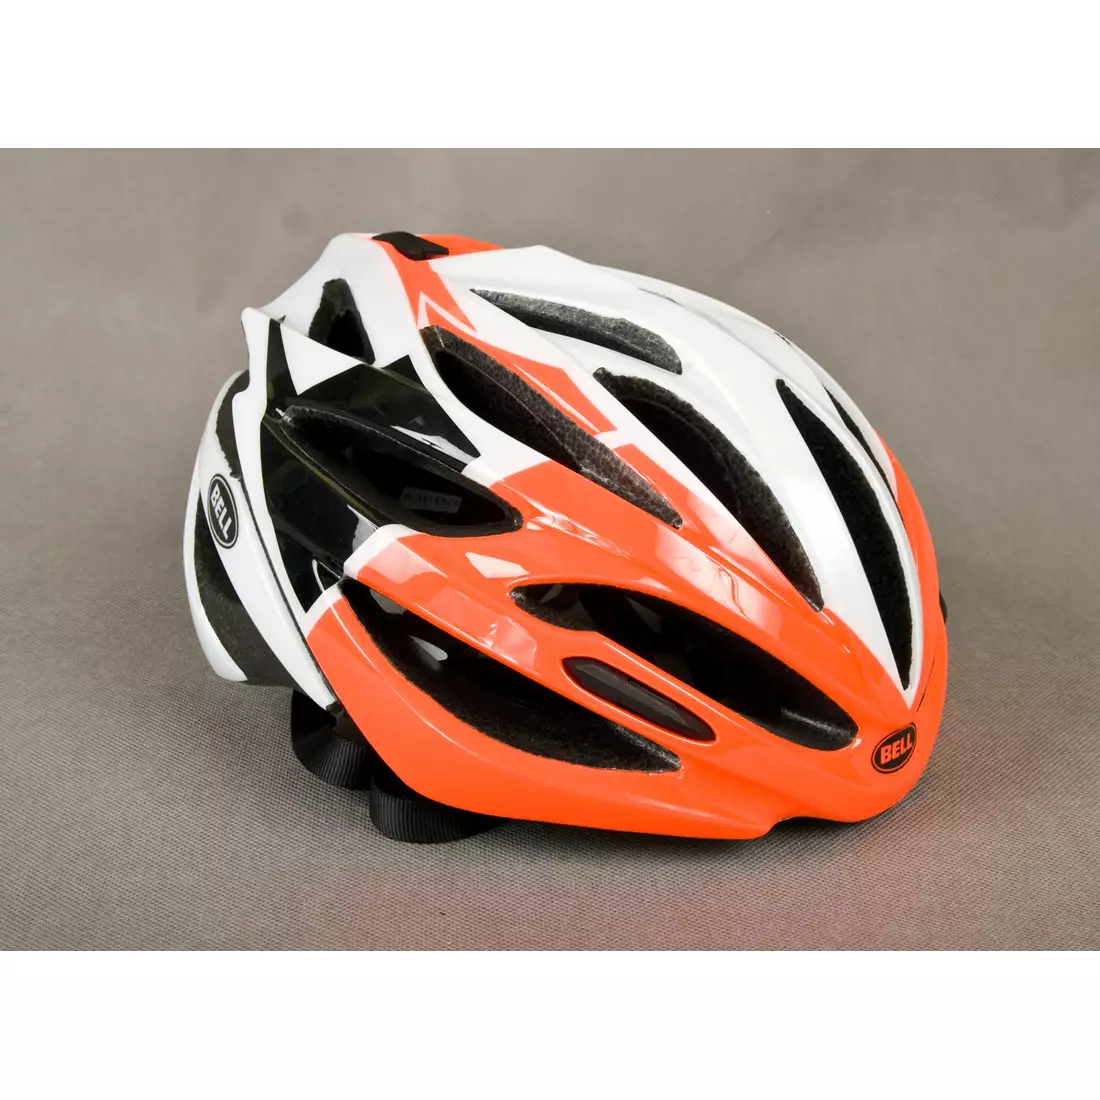 Cestná cyklistická prilba BELL ARRAY oranžovo-biela